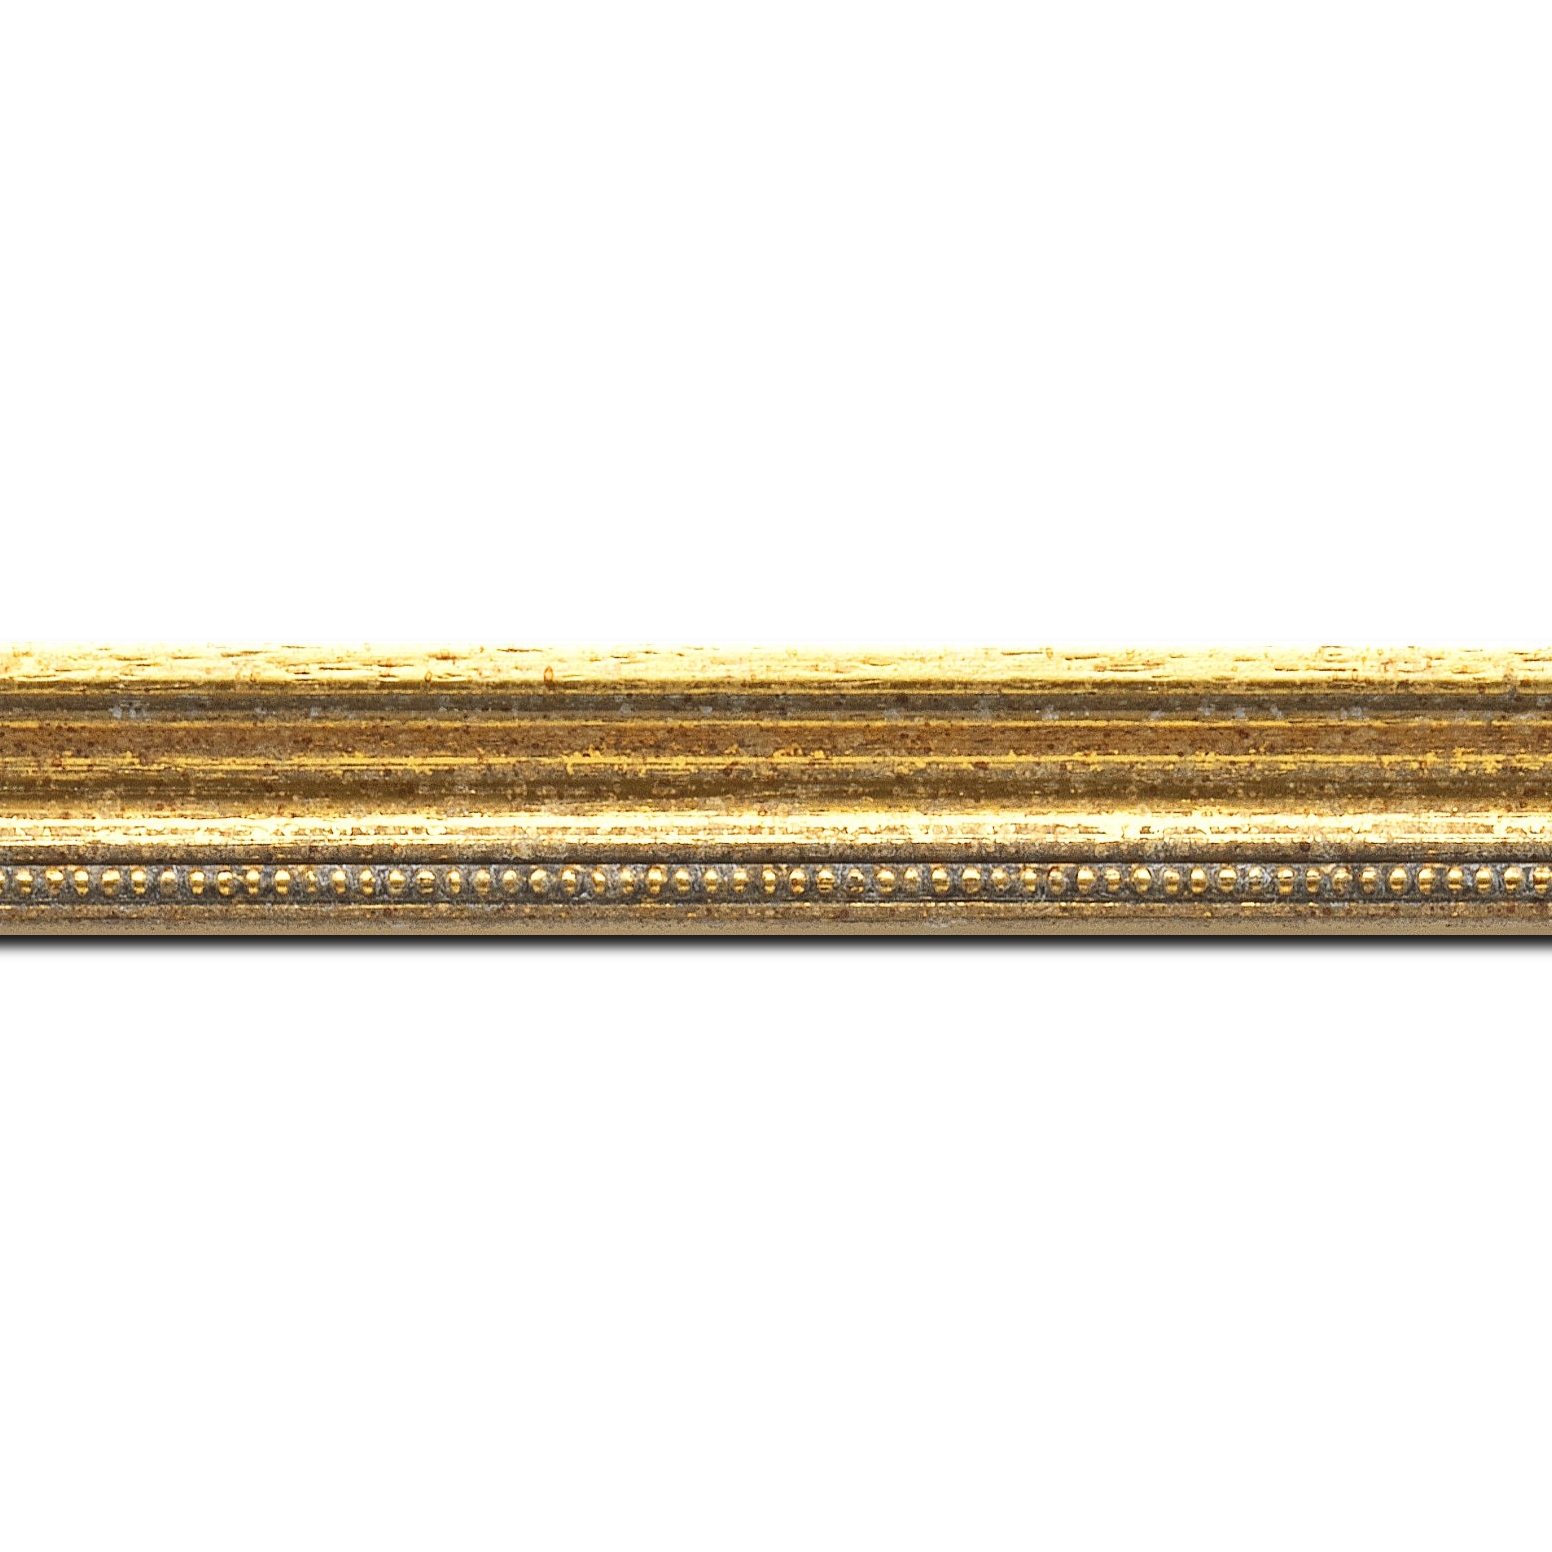 Baguette longueur 1.40m bois profil incurvé largeur 2.4cm  or antique gorge or filet perle or